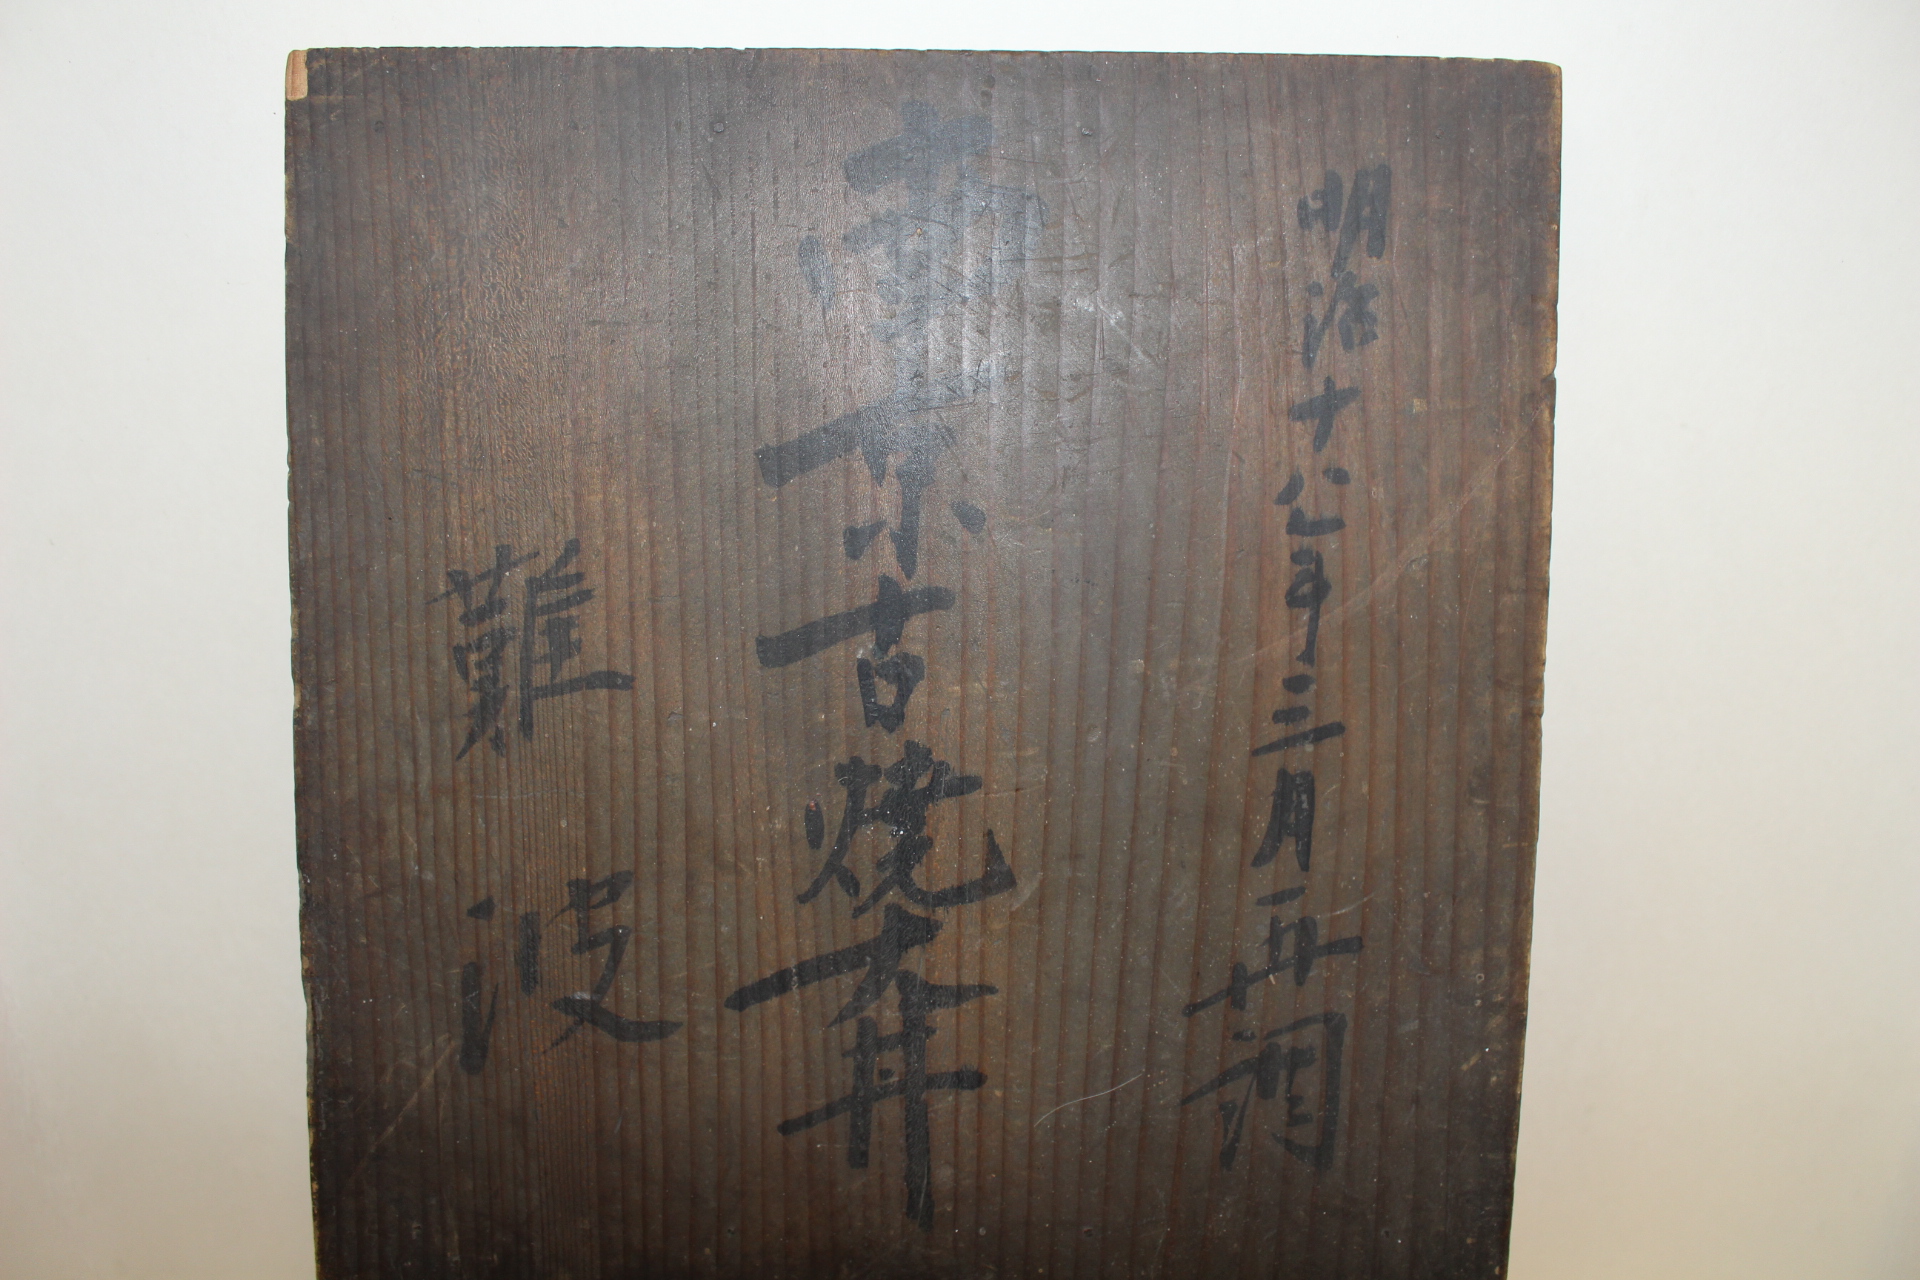 1884년 중국남경에서 구했다는 내용이 있는 청화백자구갑화문 대완